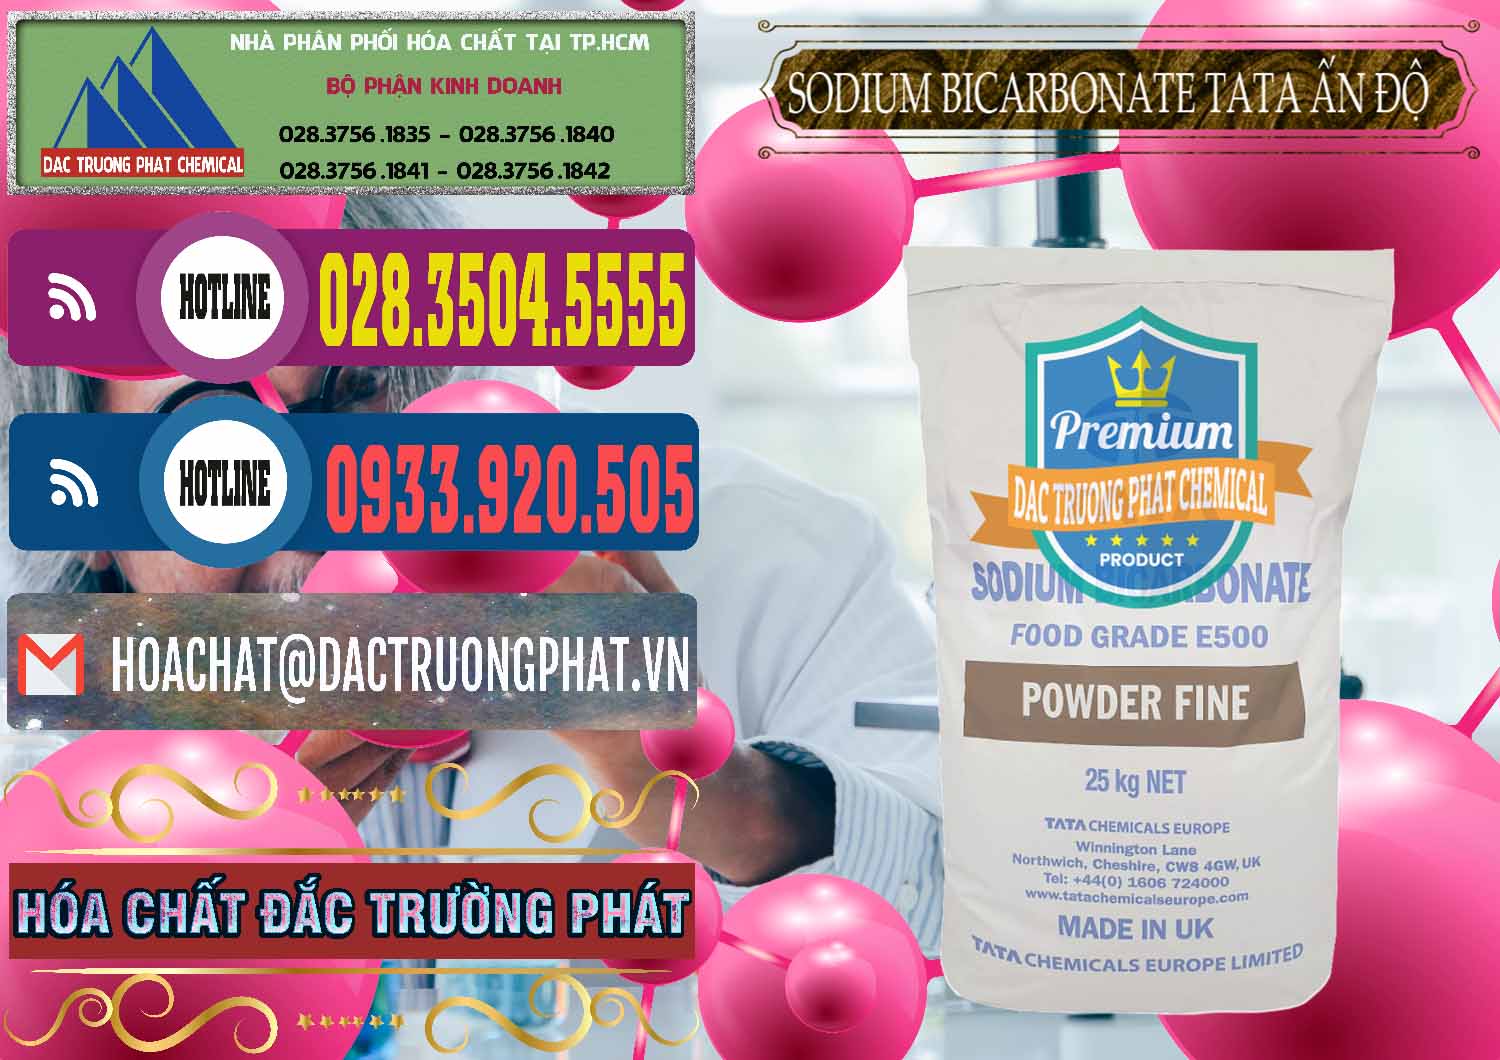 Công ty chuyên bán _ cung ứng Sodium Bicarbonate – Bicar NaHCO3 E500 Thực Phẩm Food Grade Tata Ấn Độ India - 0261 - Chuyên cung cấp _ phân phối hóa chất tại TP.HCM - muabanhoachat.com.vn